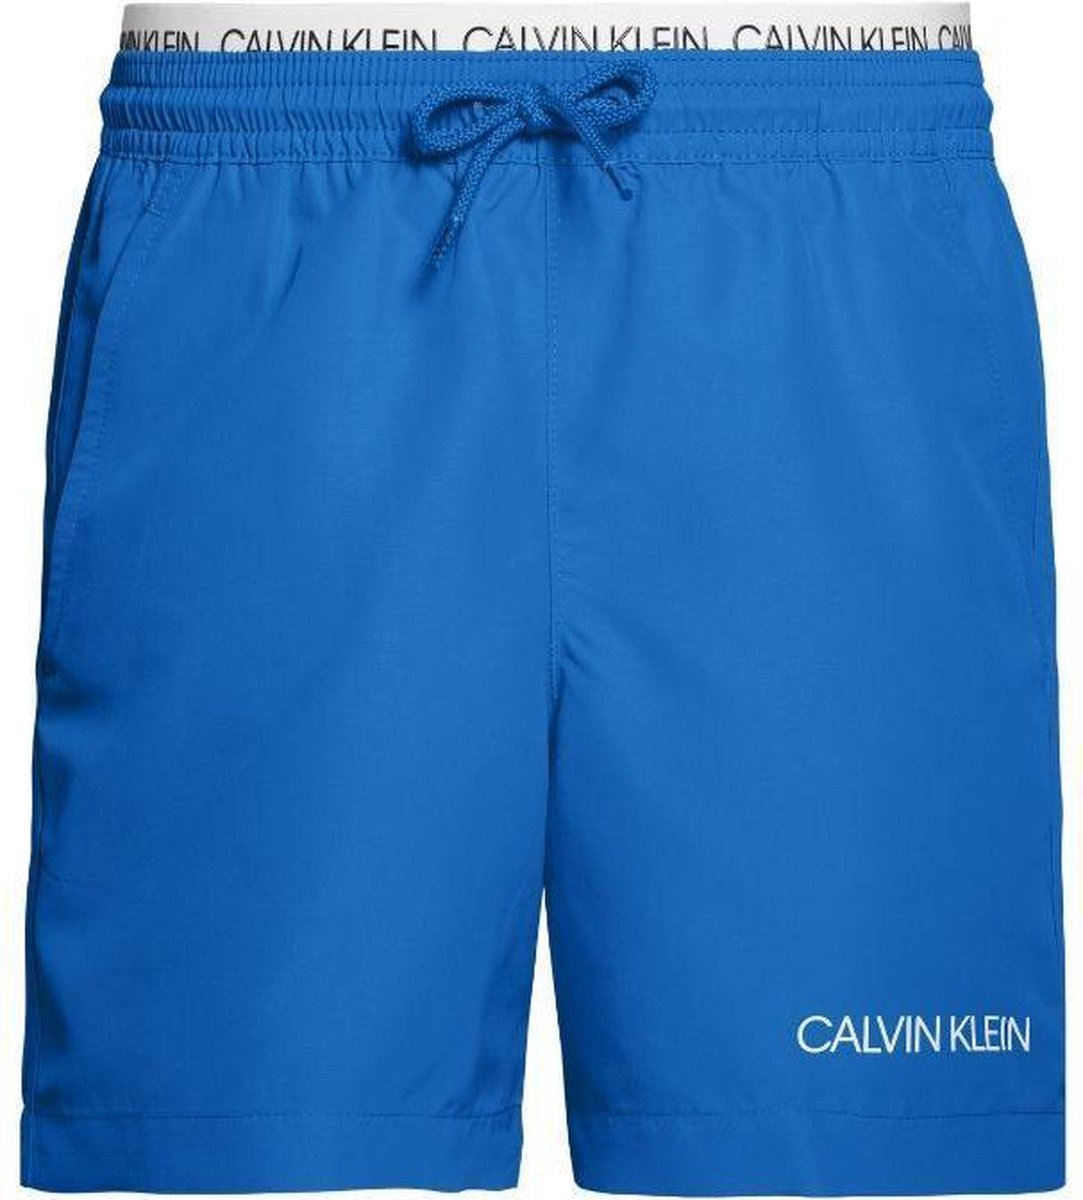 vrije tijd fragment borduurwerk Calvin klein jongens zwembroek met koord - blauw | bol.com